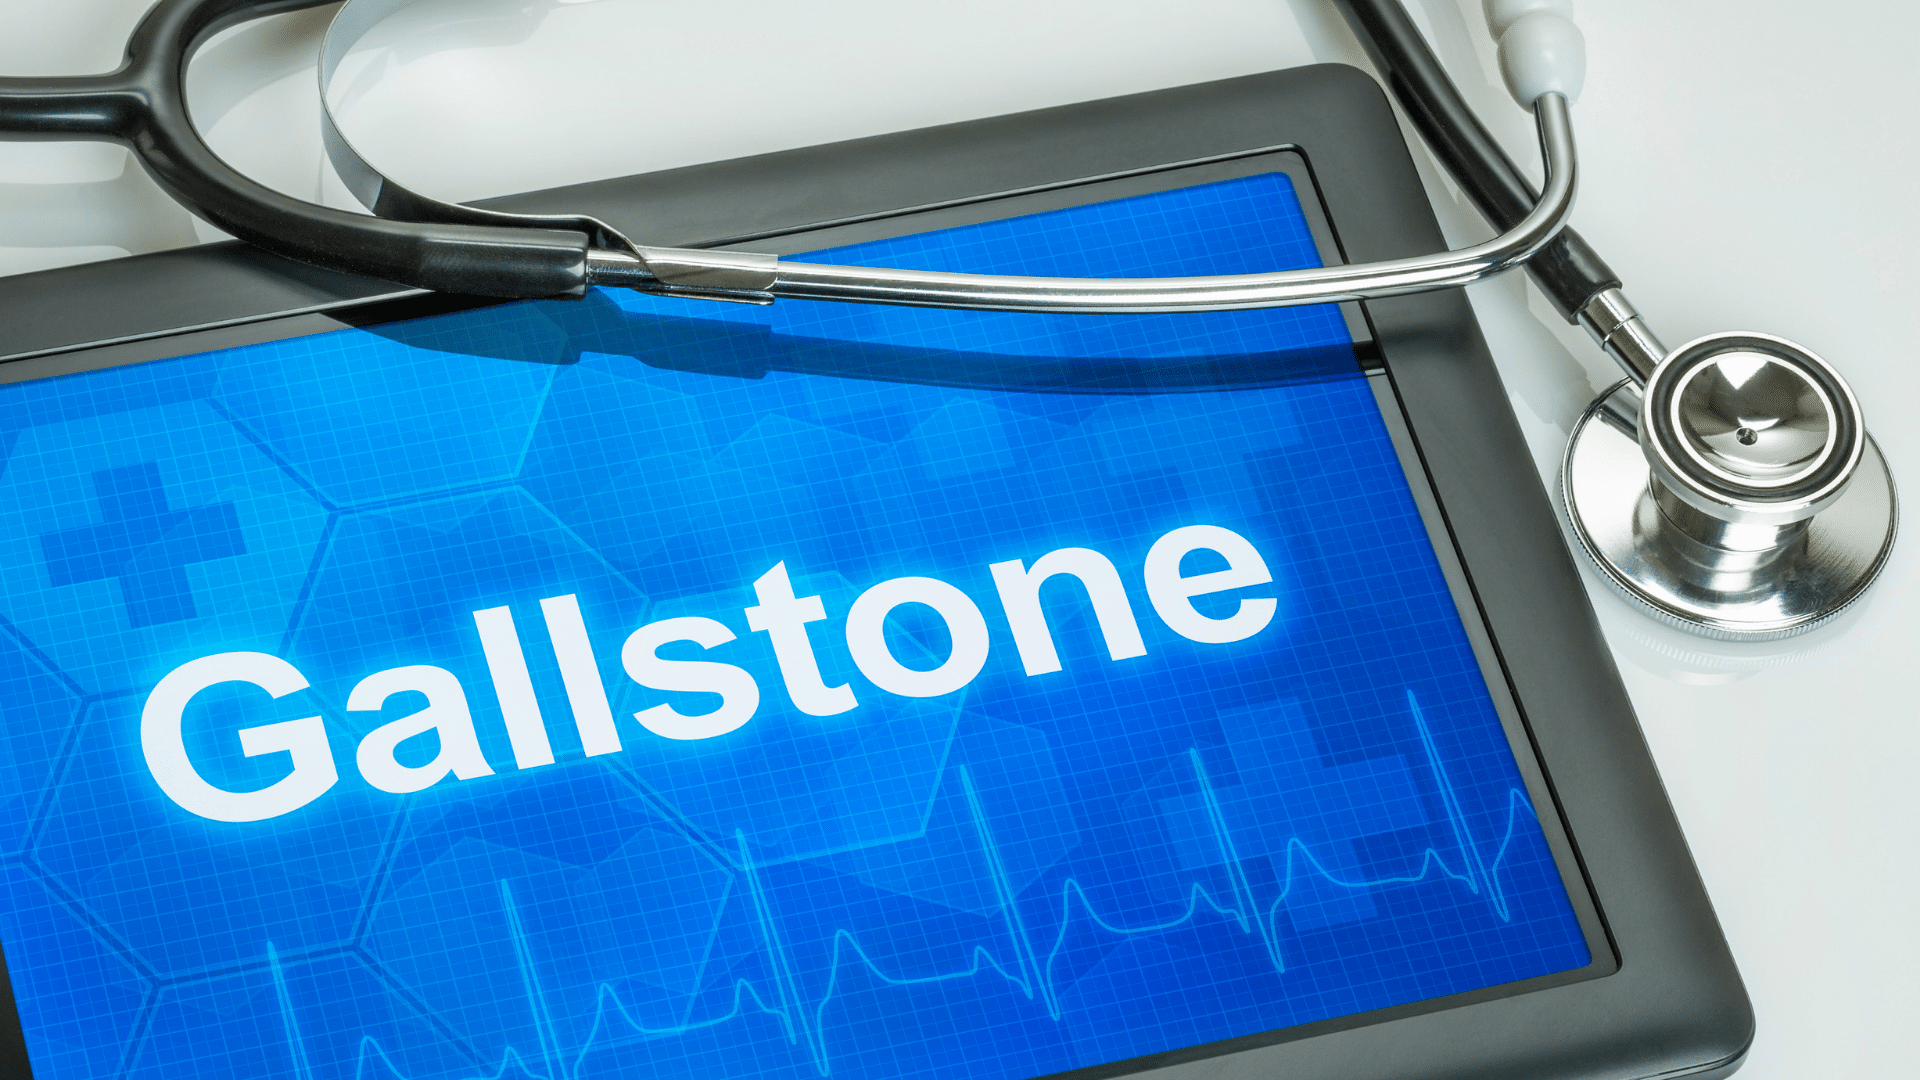 Gallstone Services